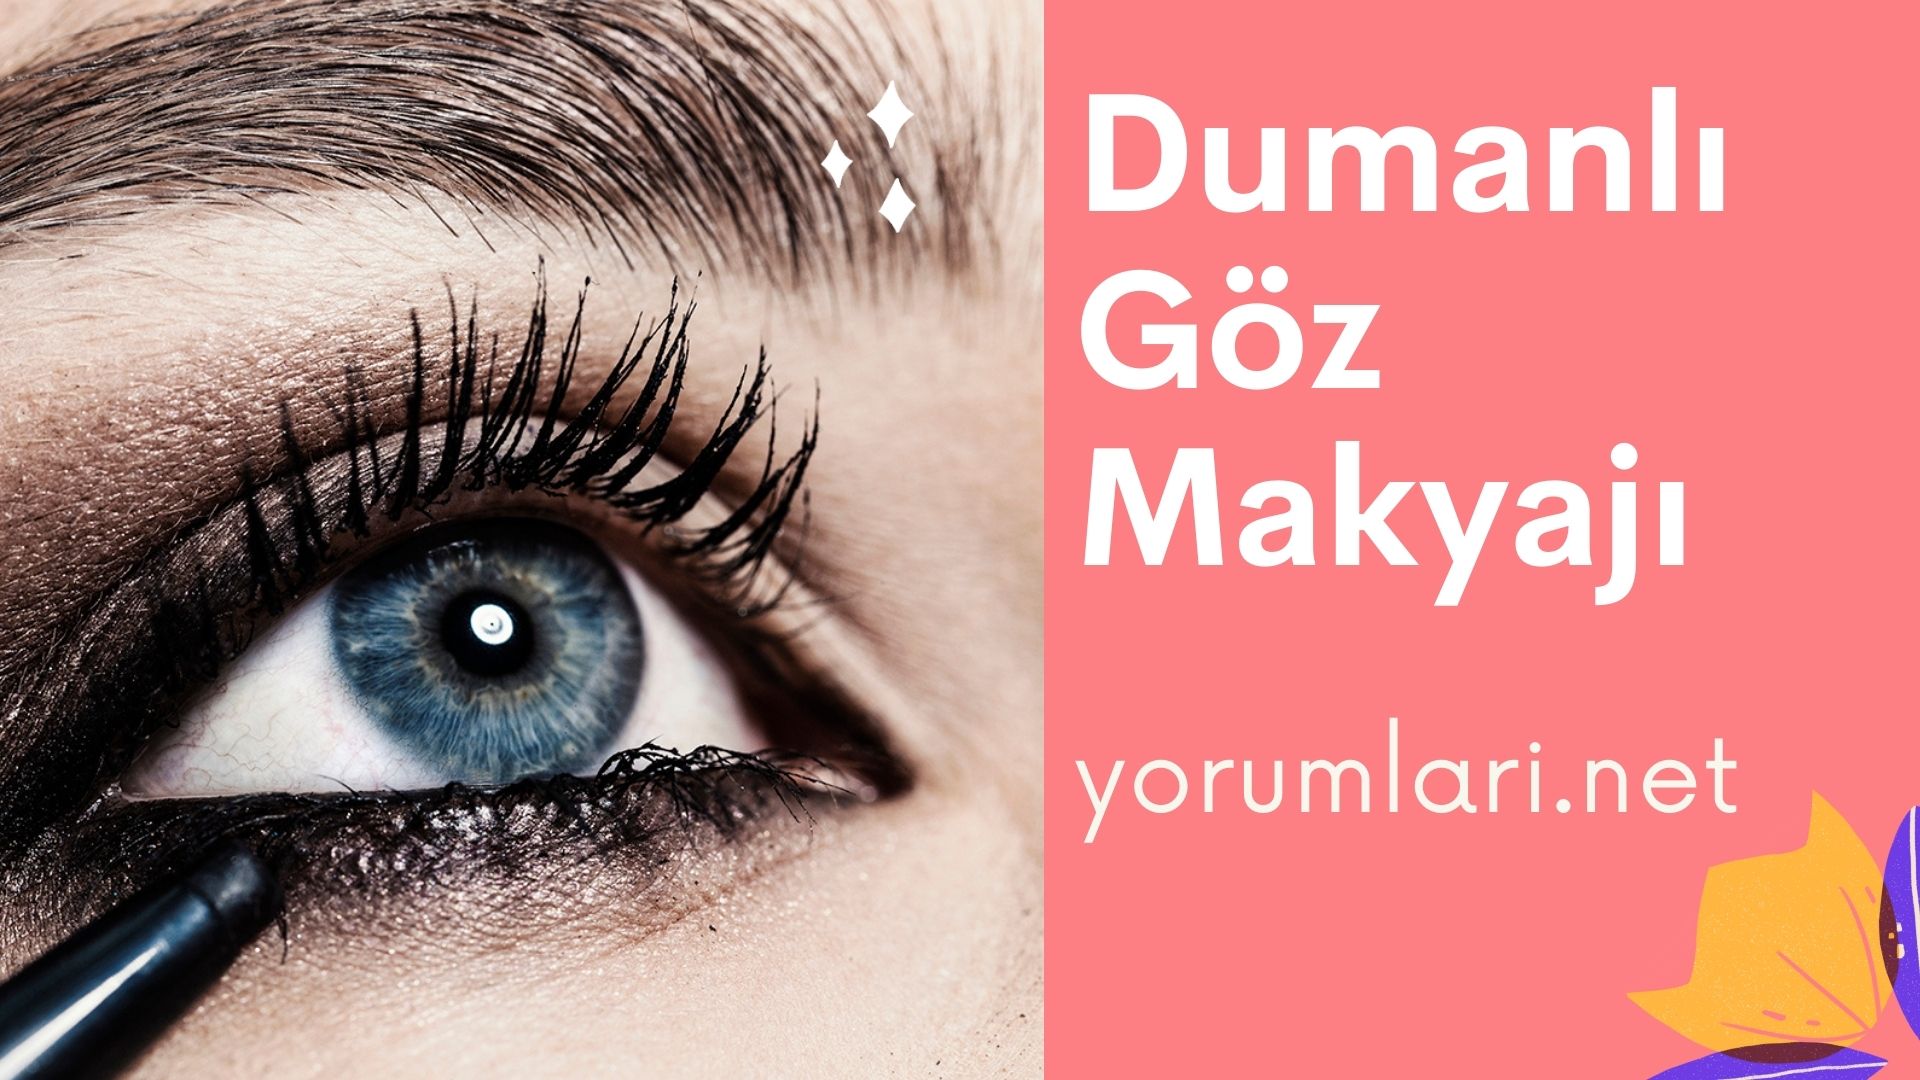 Dumanlı Göz Makyajı | Dumanlı Göz Makyajı Nasıl Yapılır Yorumları